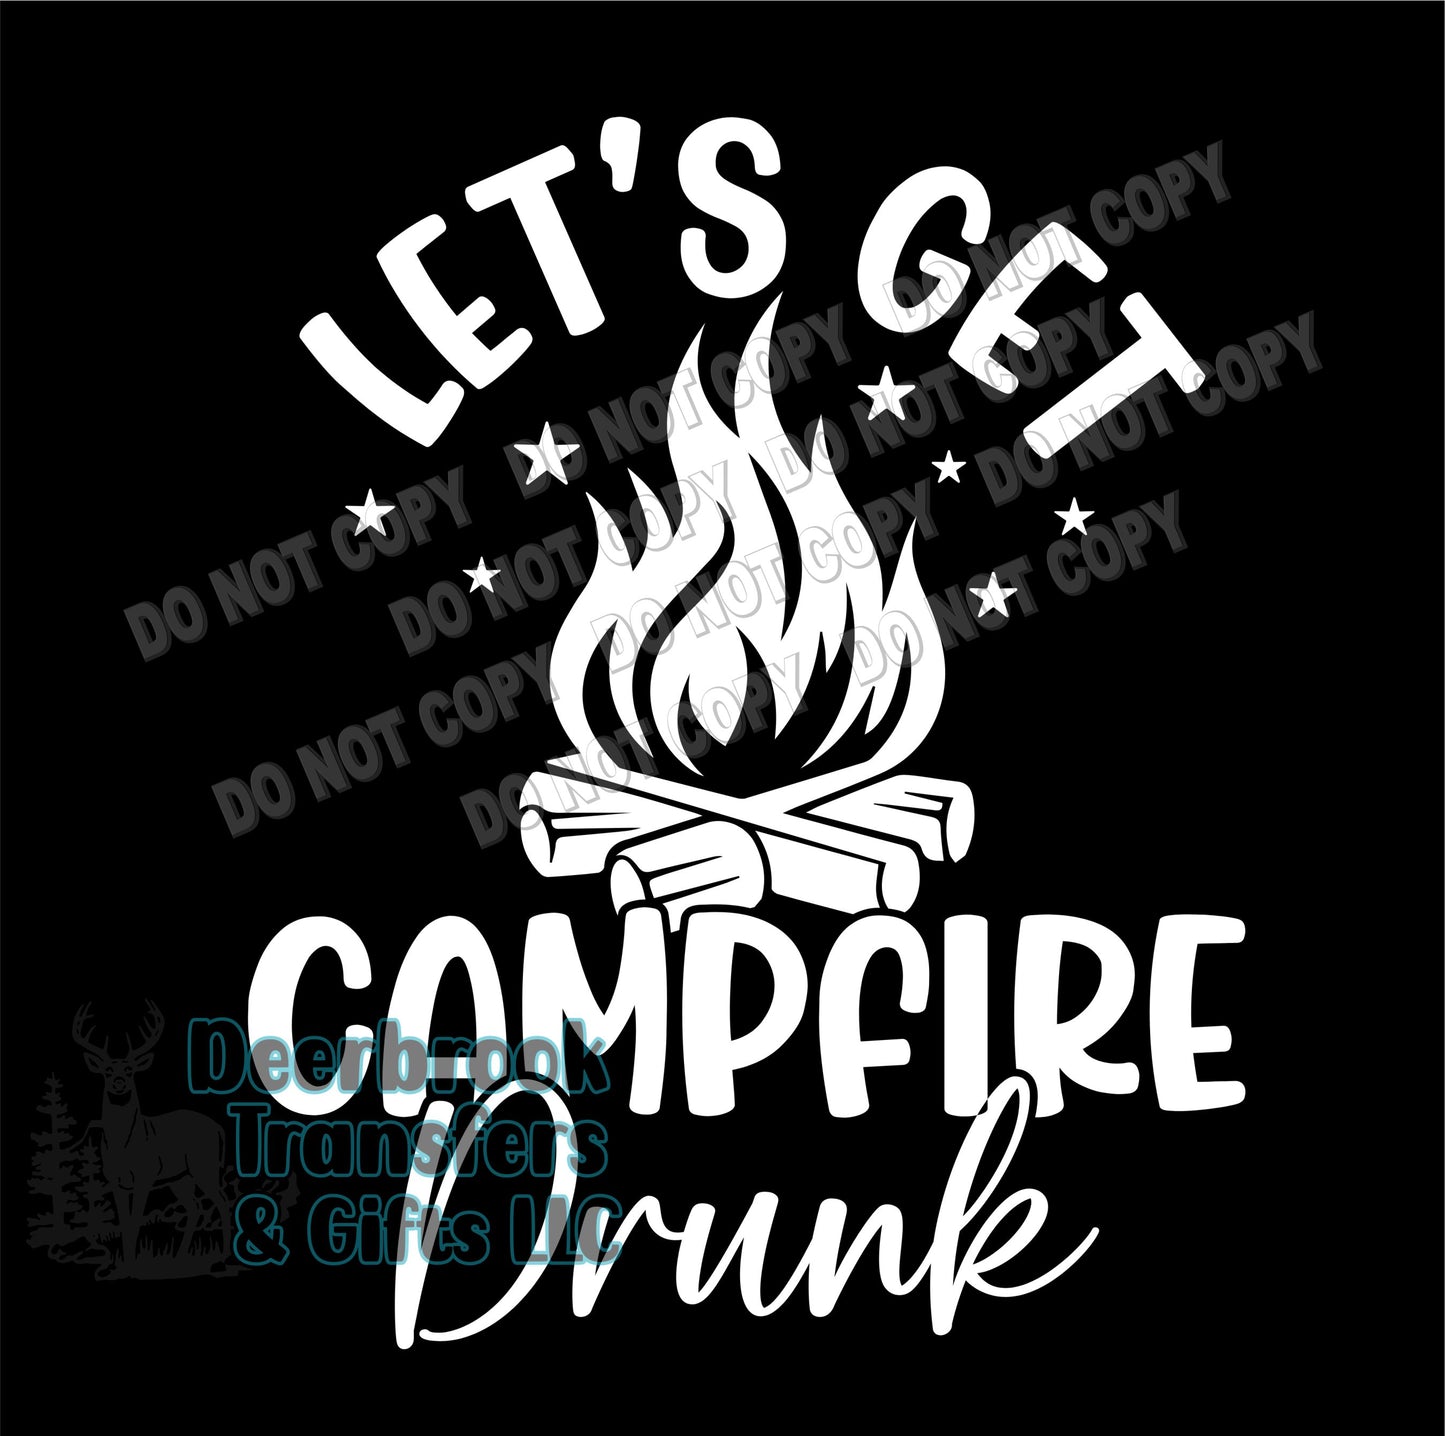 Let's get campfire drunk transfer